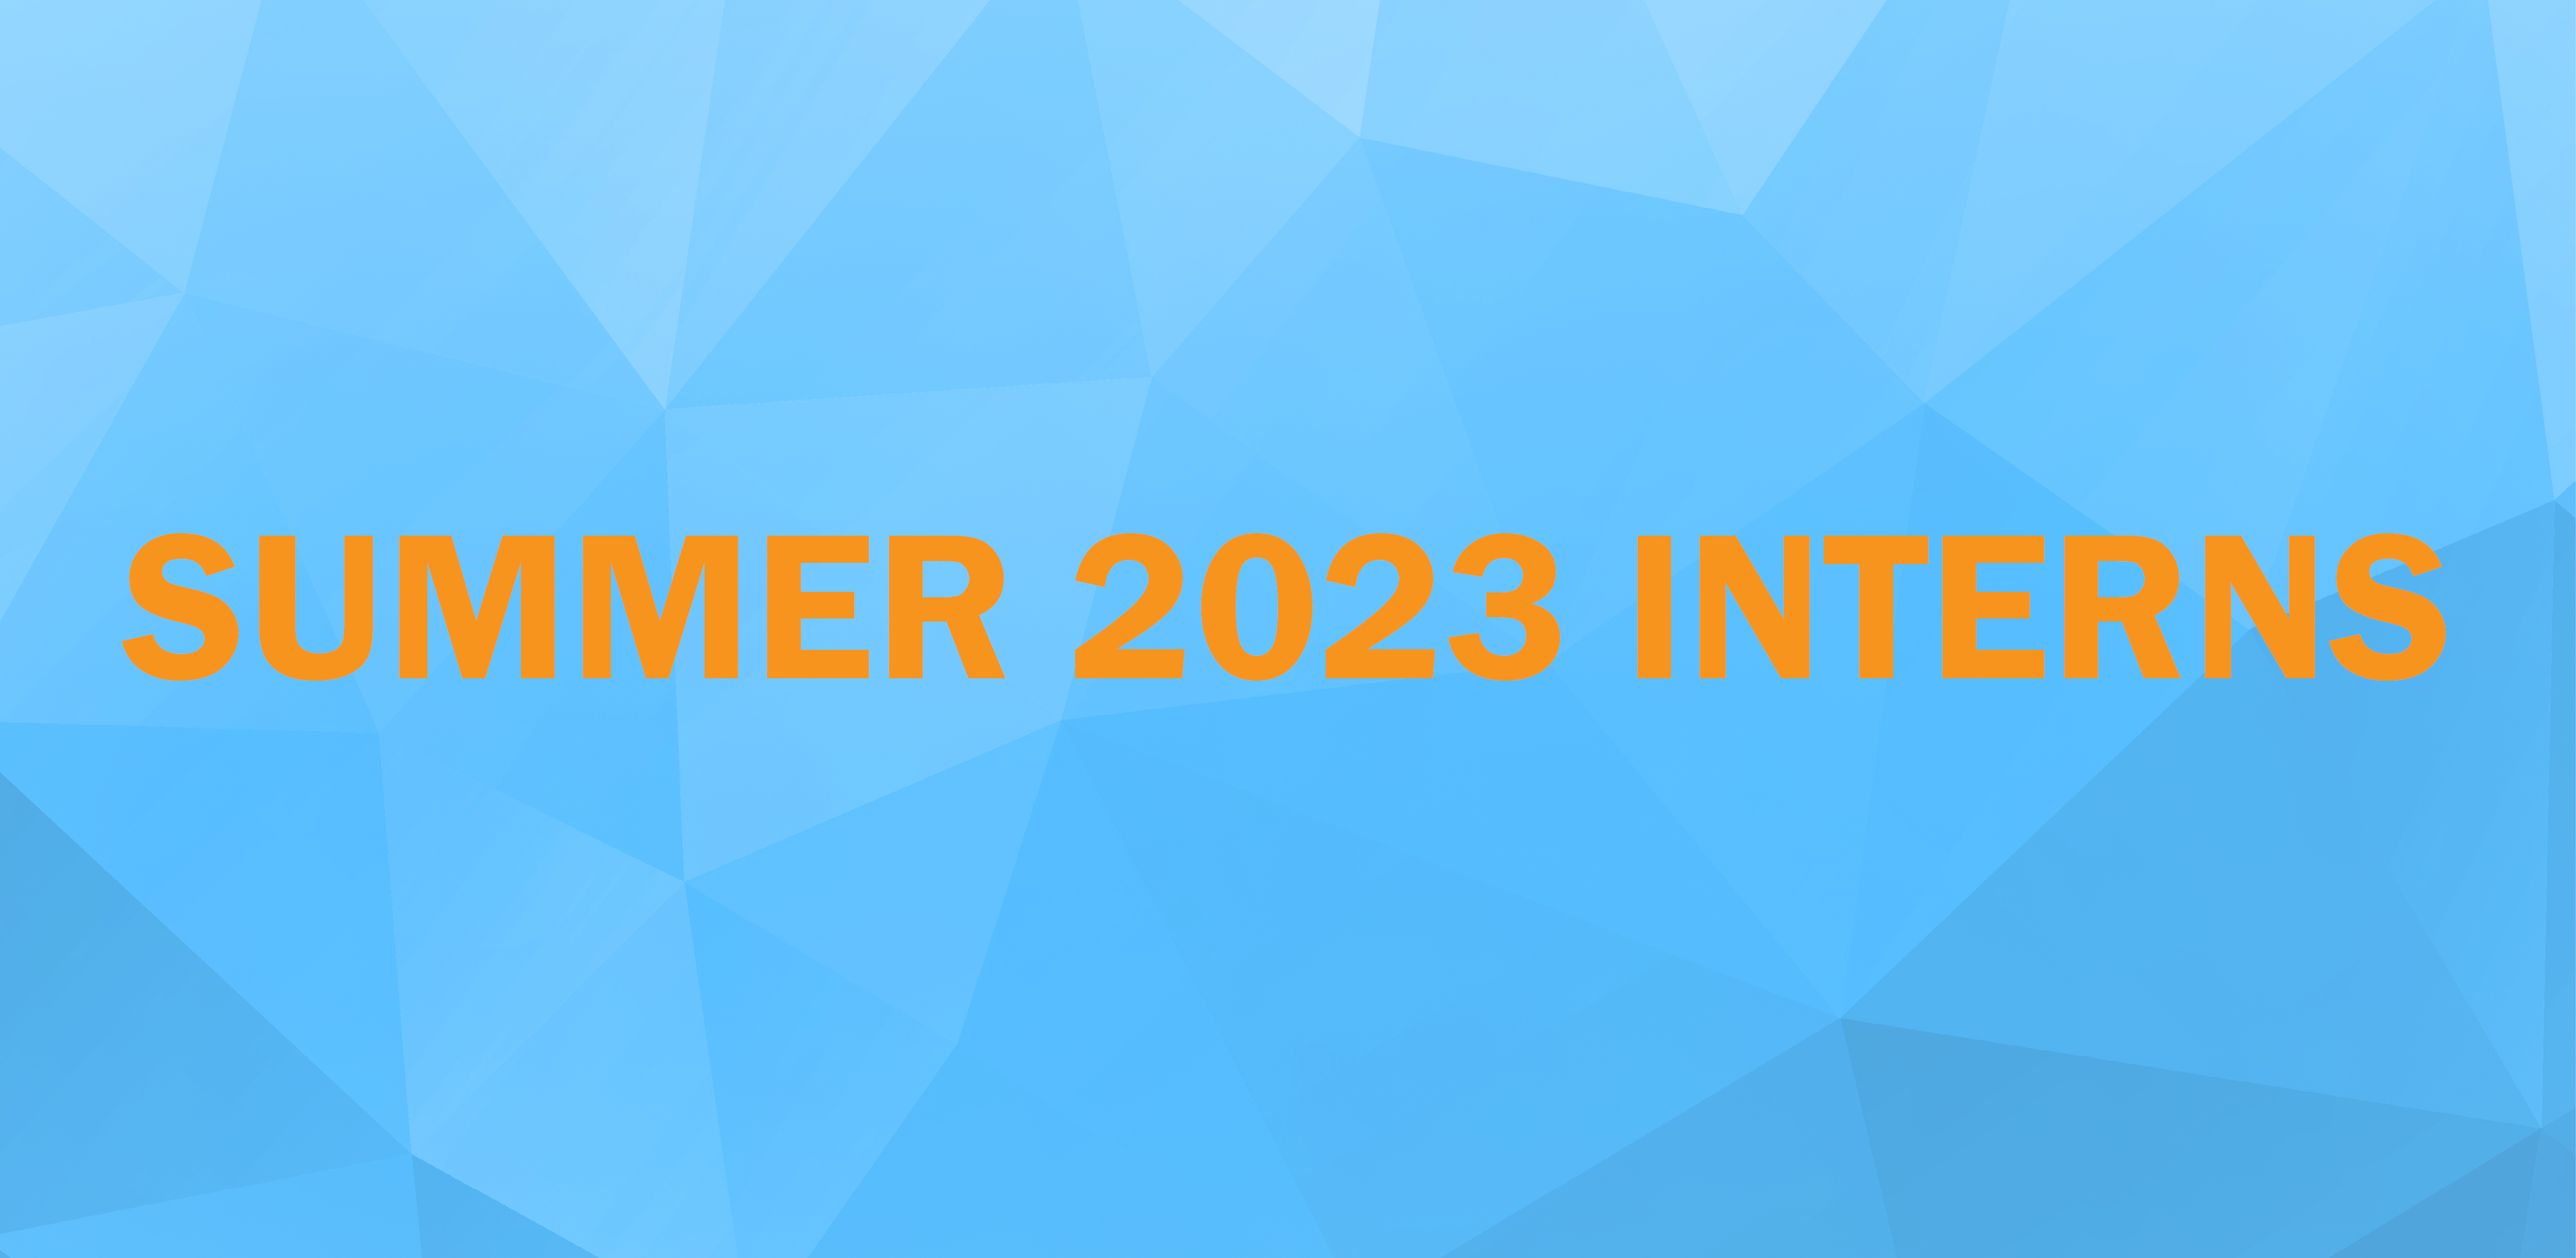 Meet our Summer 2023 Interns